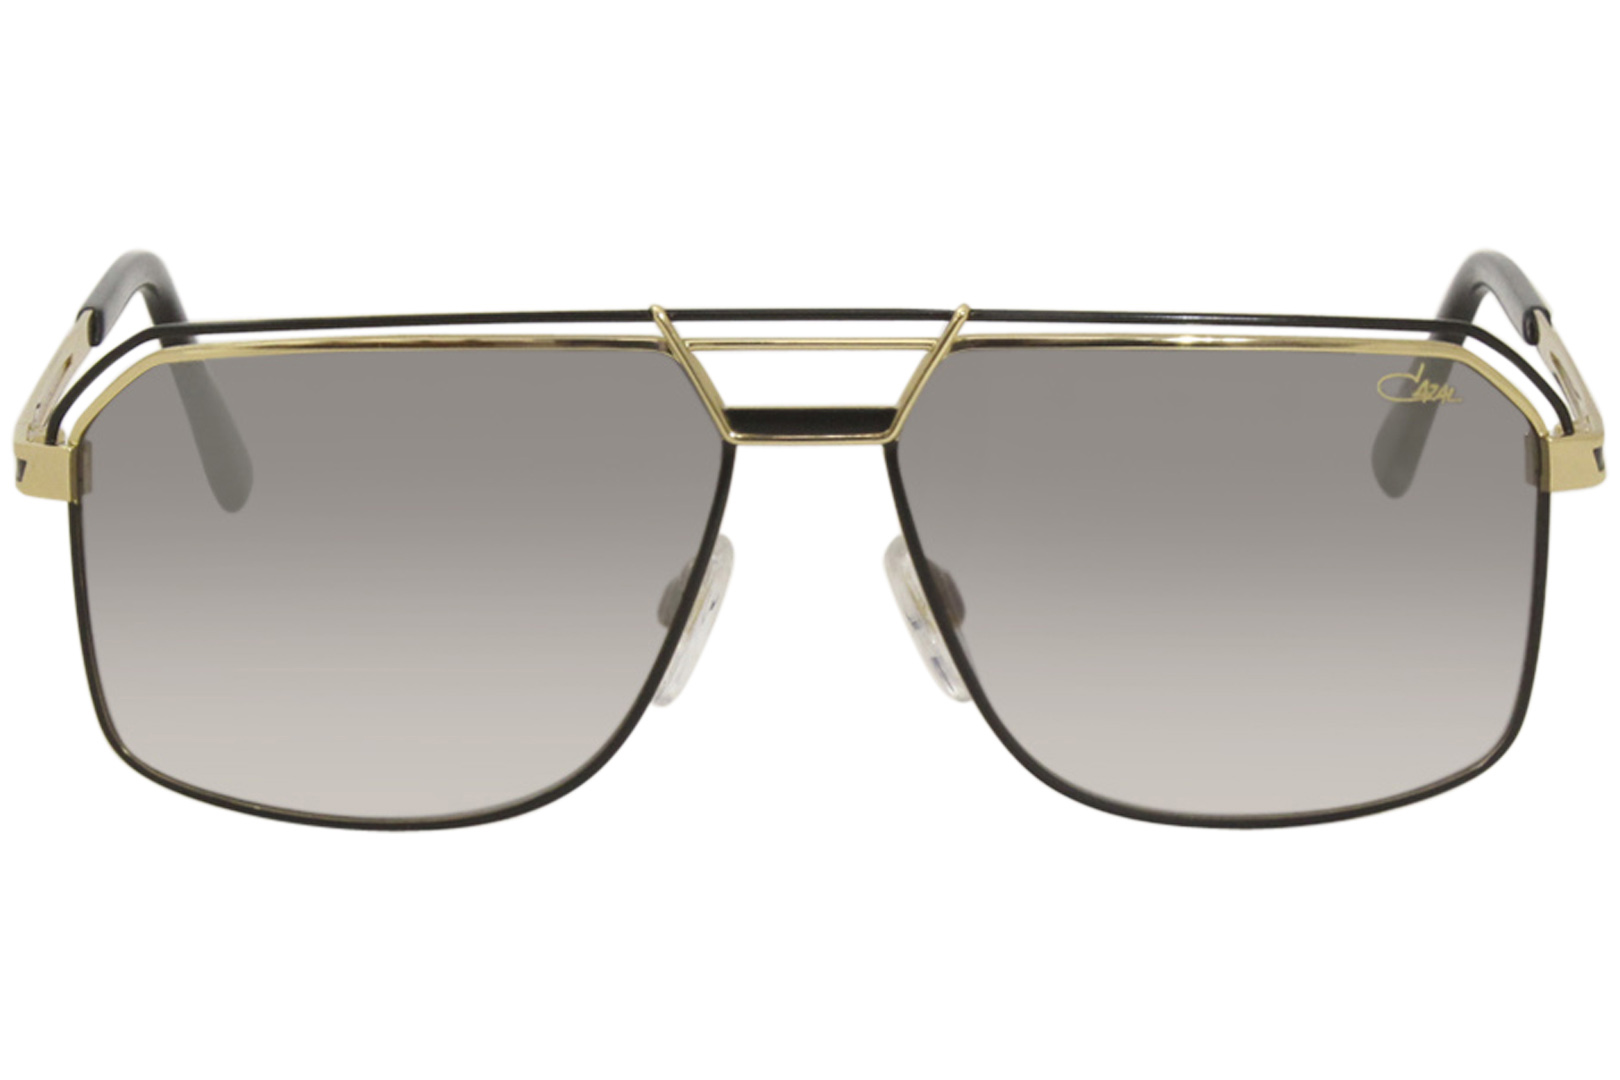 Cazal Legends 992 Sunglasses Men's Full Rim Optical Frame Shades ...